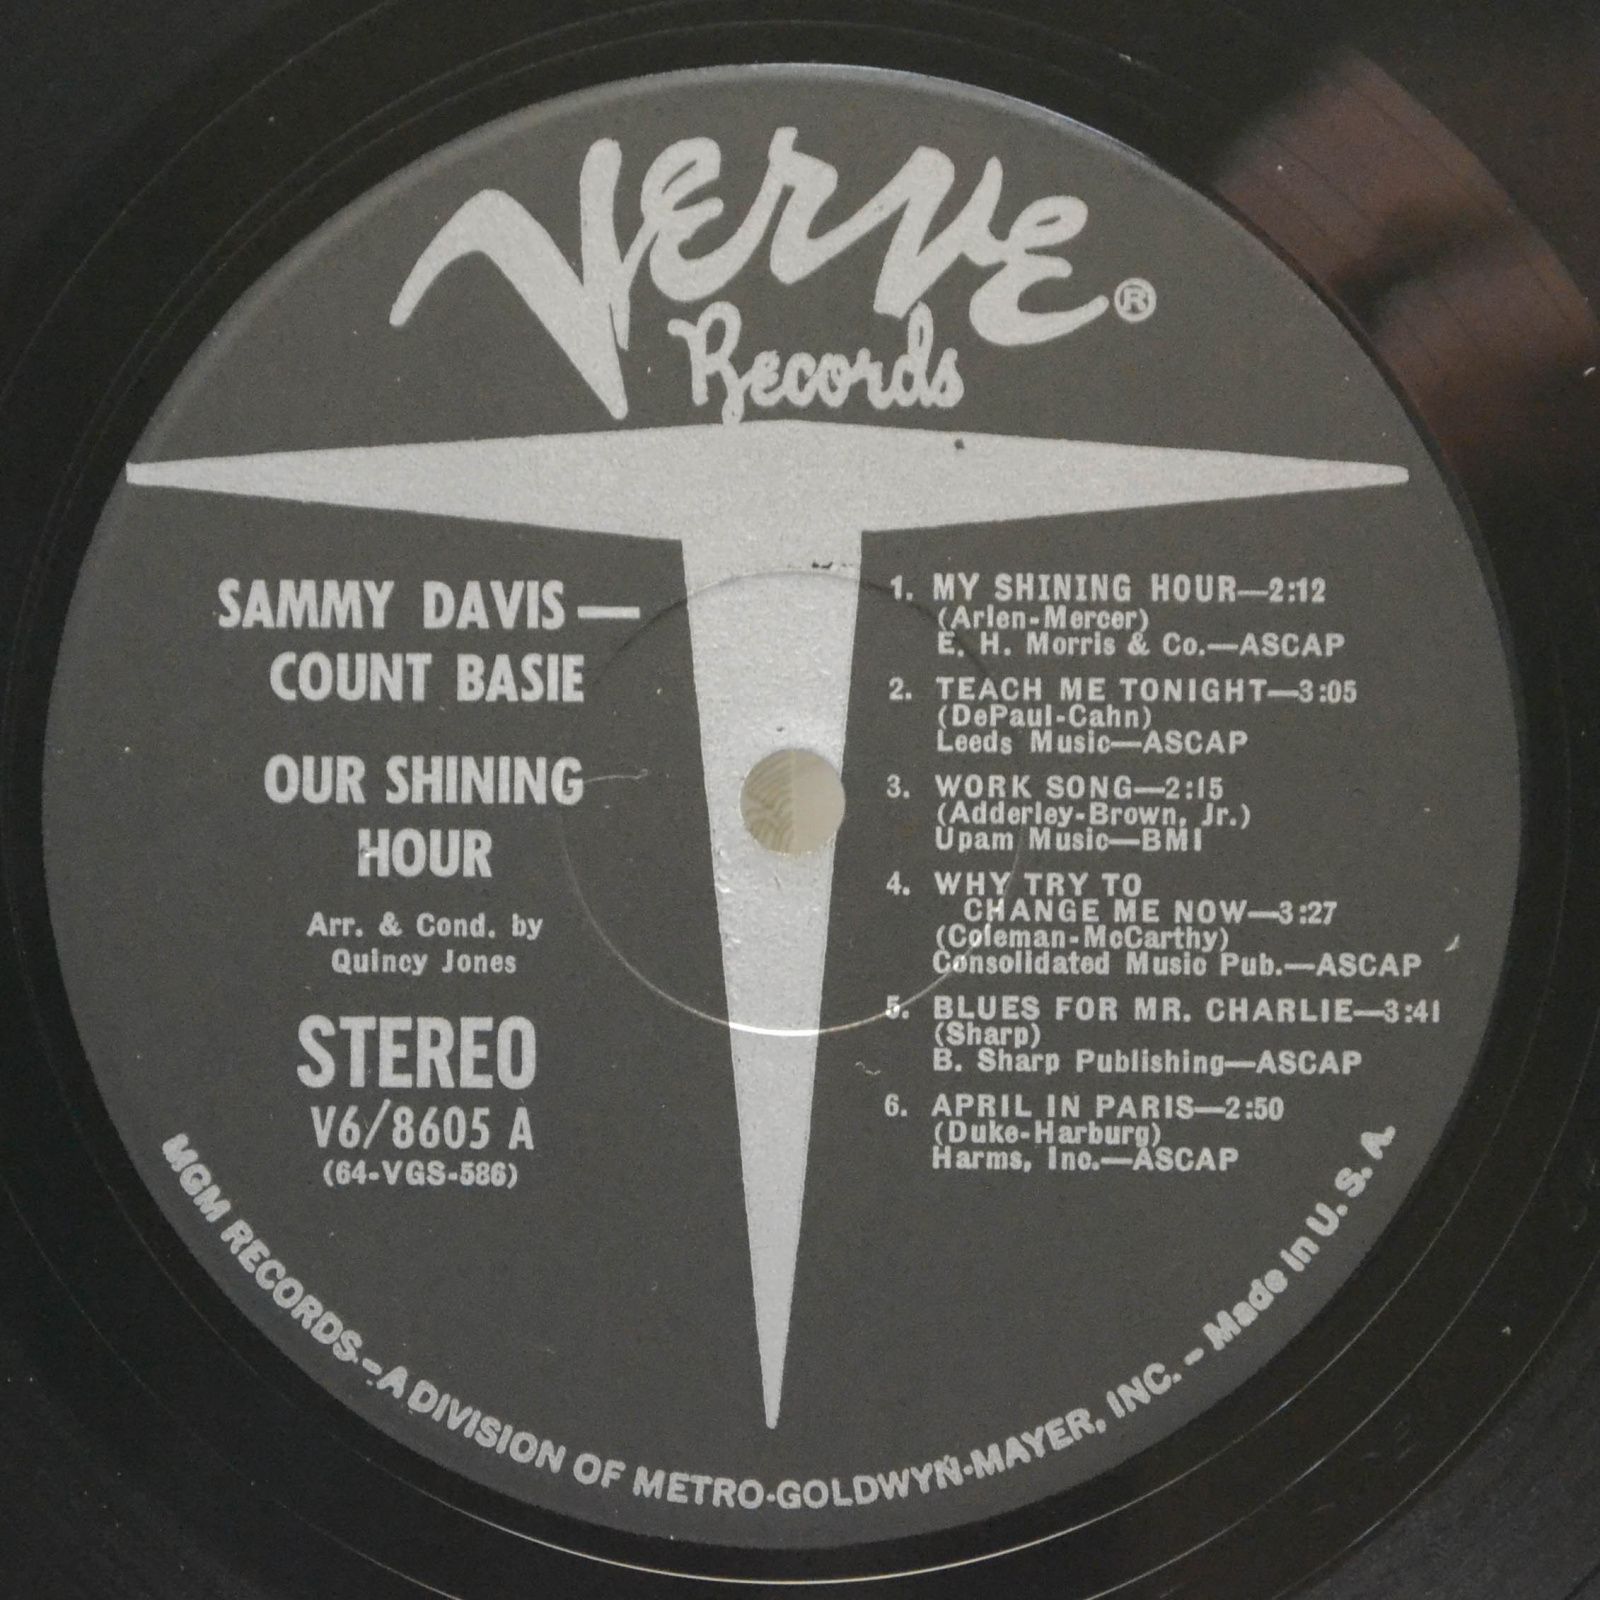 Sammy Davis, Count Basie — Our Shining Hour, 1969